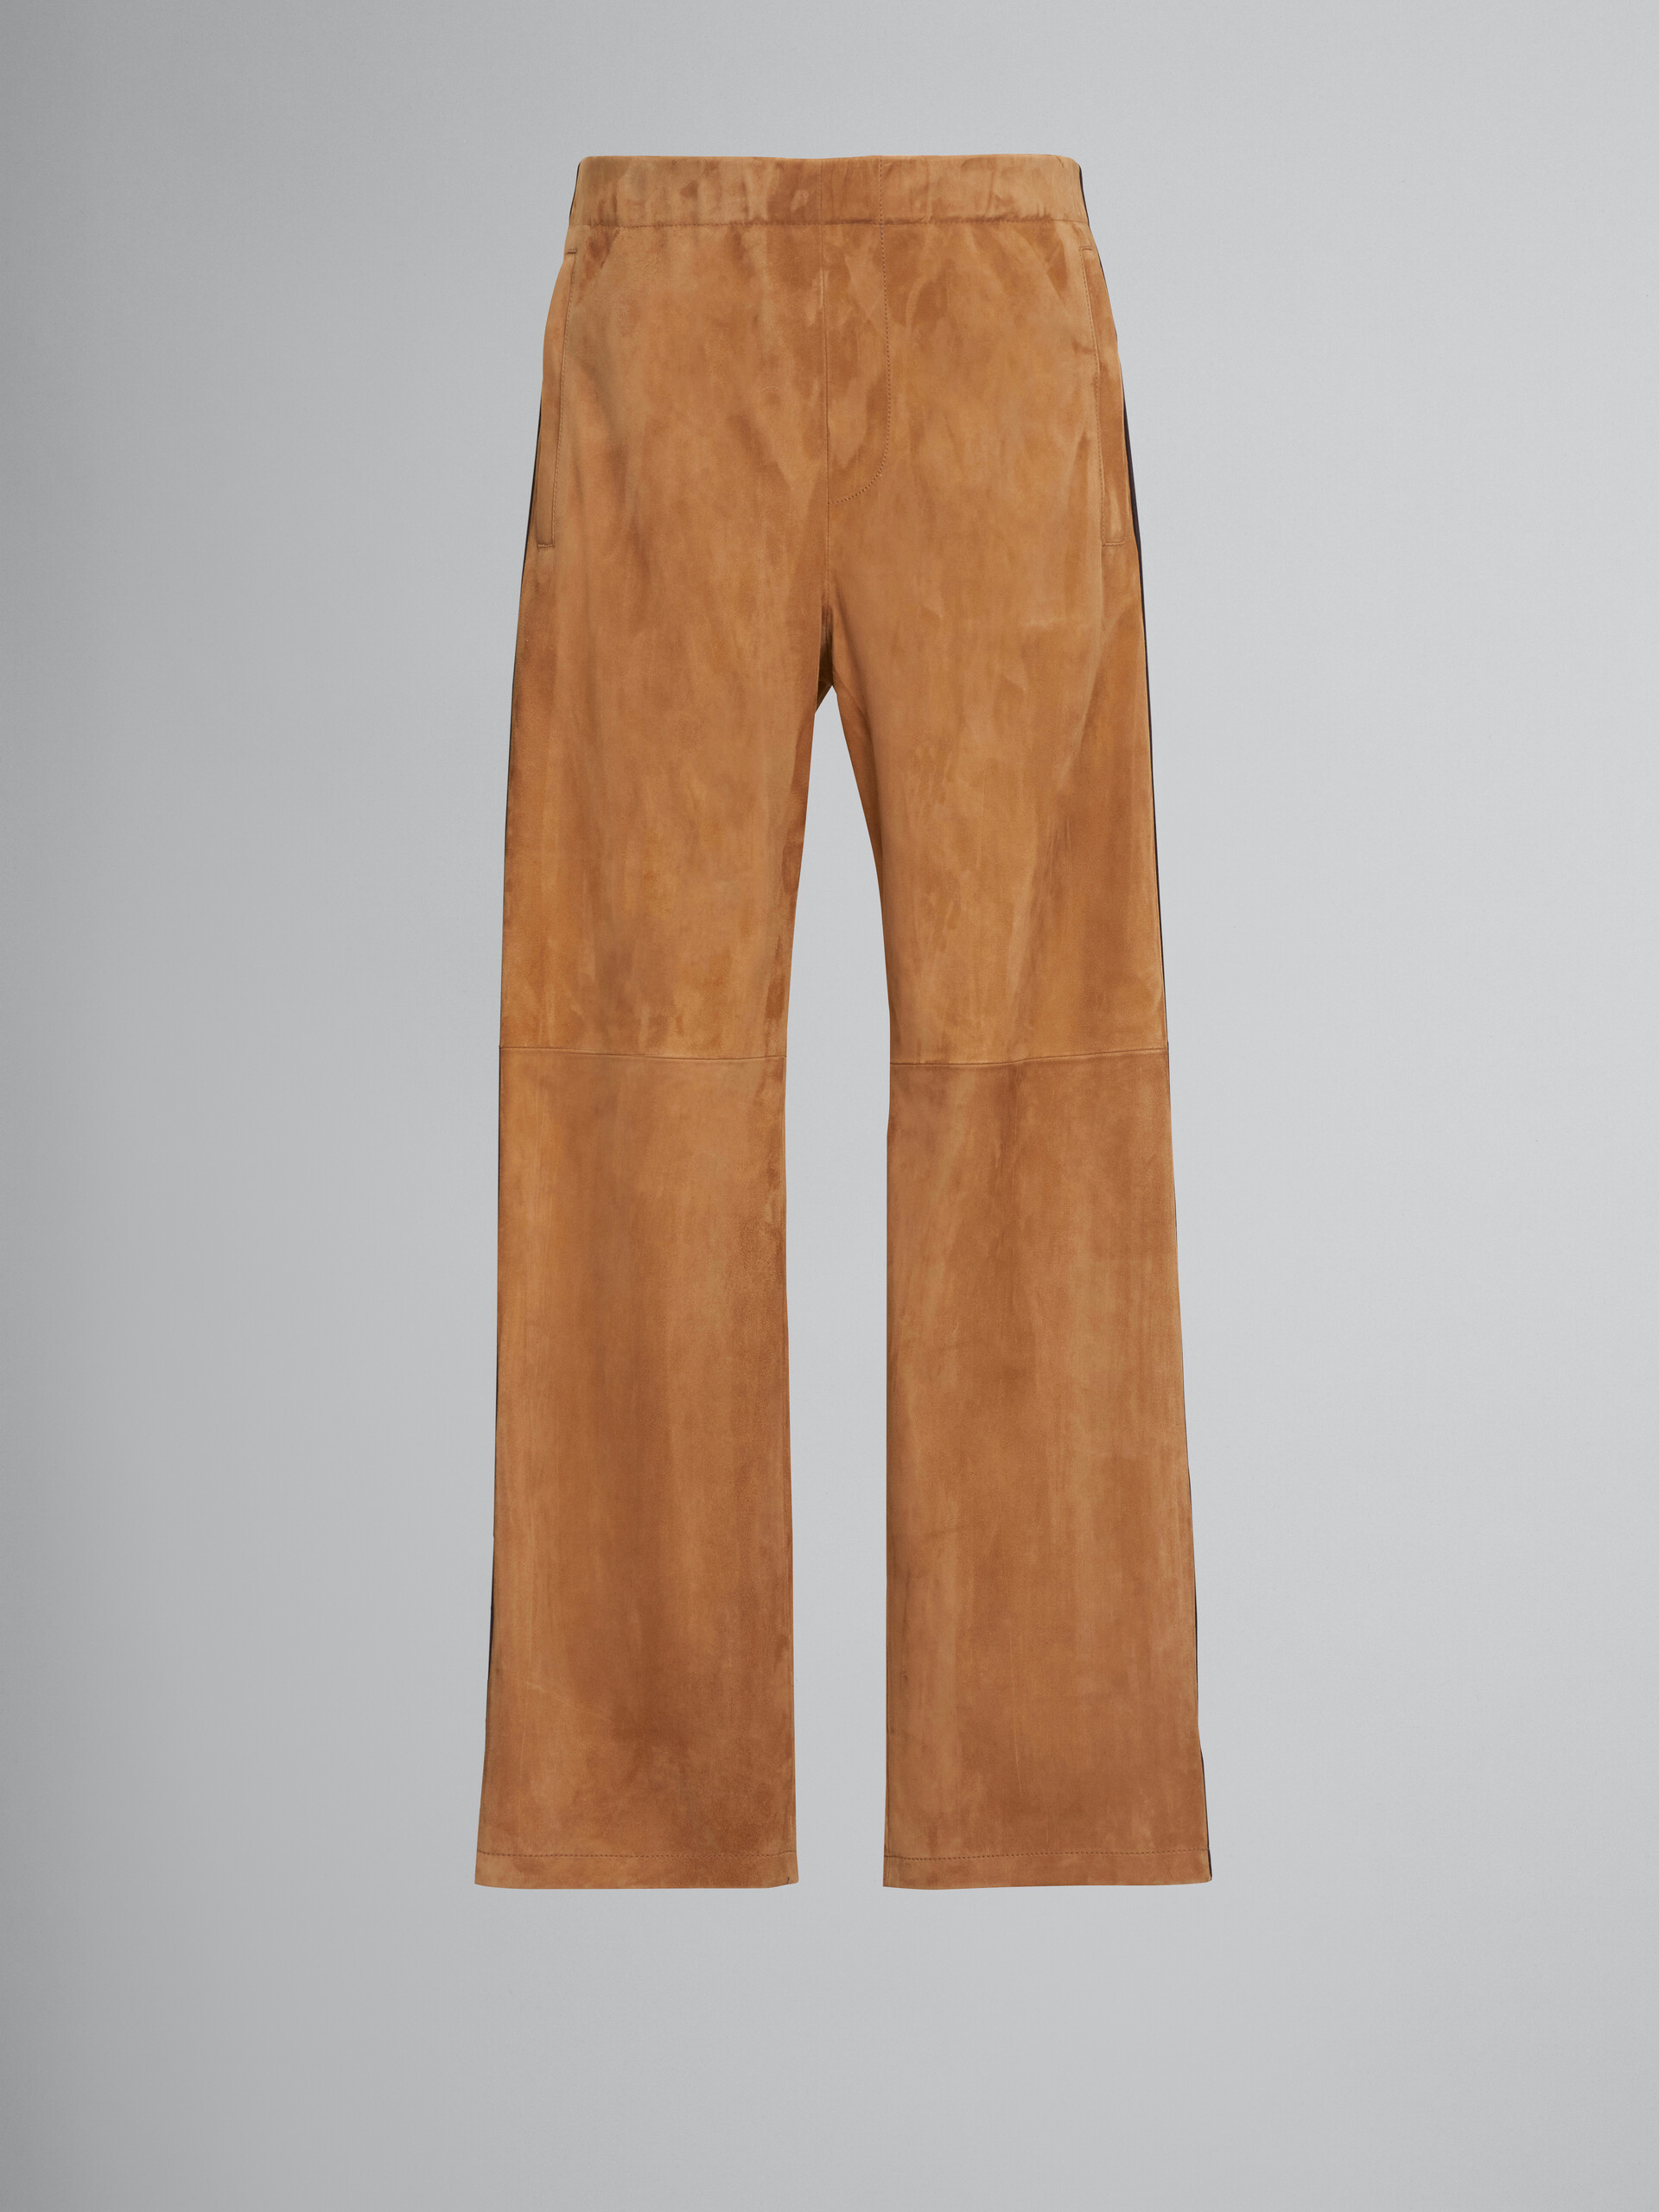 Braune Hose aus Wildleder mit Streifen aus Nappaleder - Hosen - Image 1